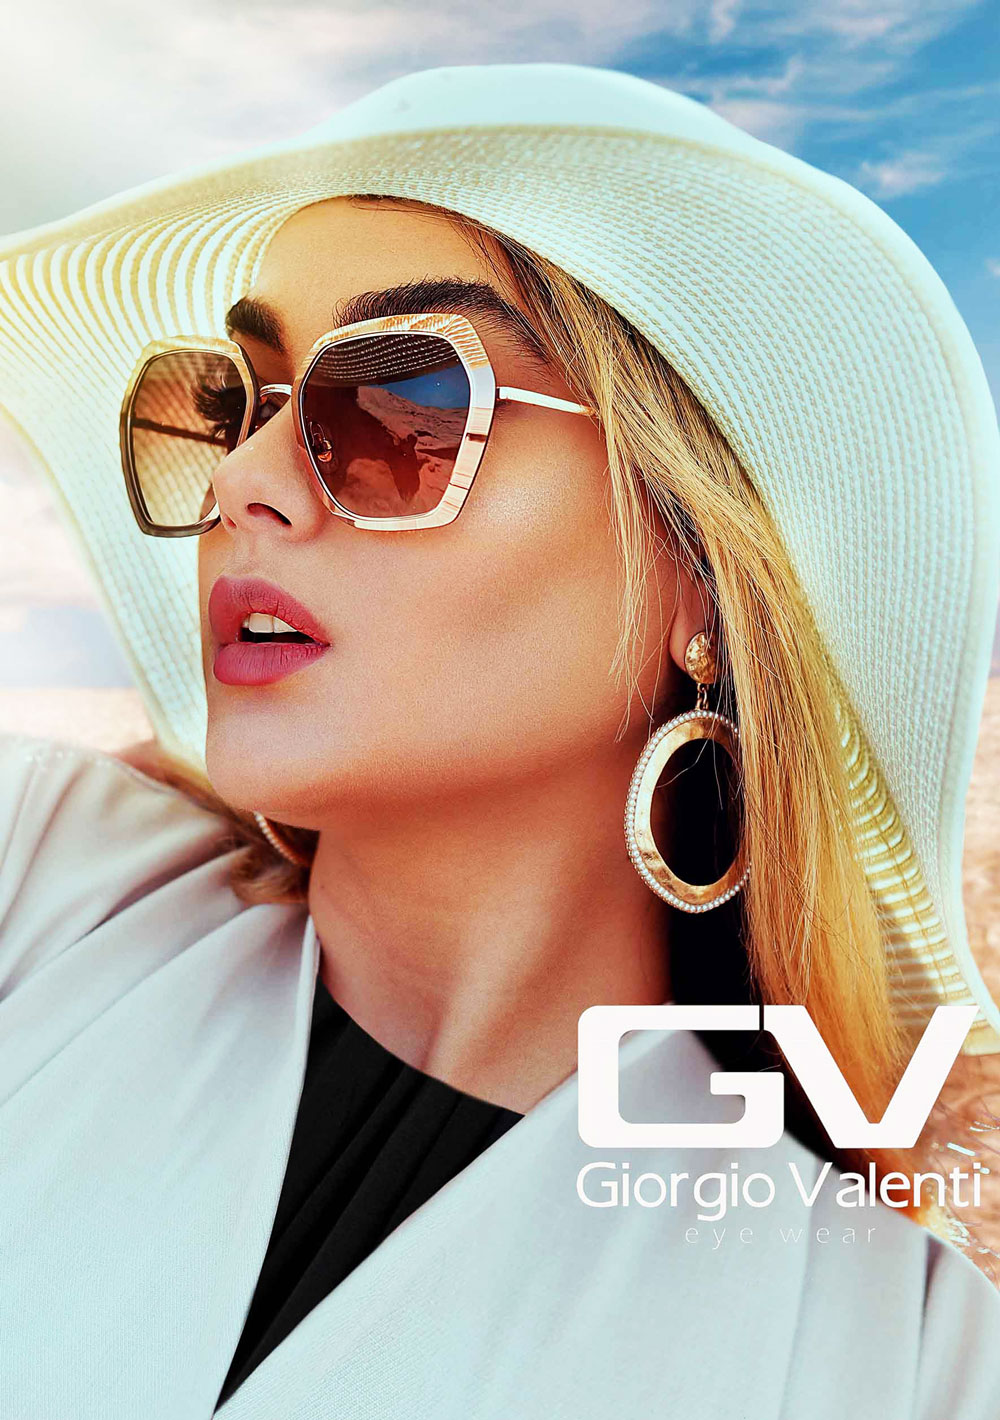 Giorgio valenti and fits sunglasses fashion new model